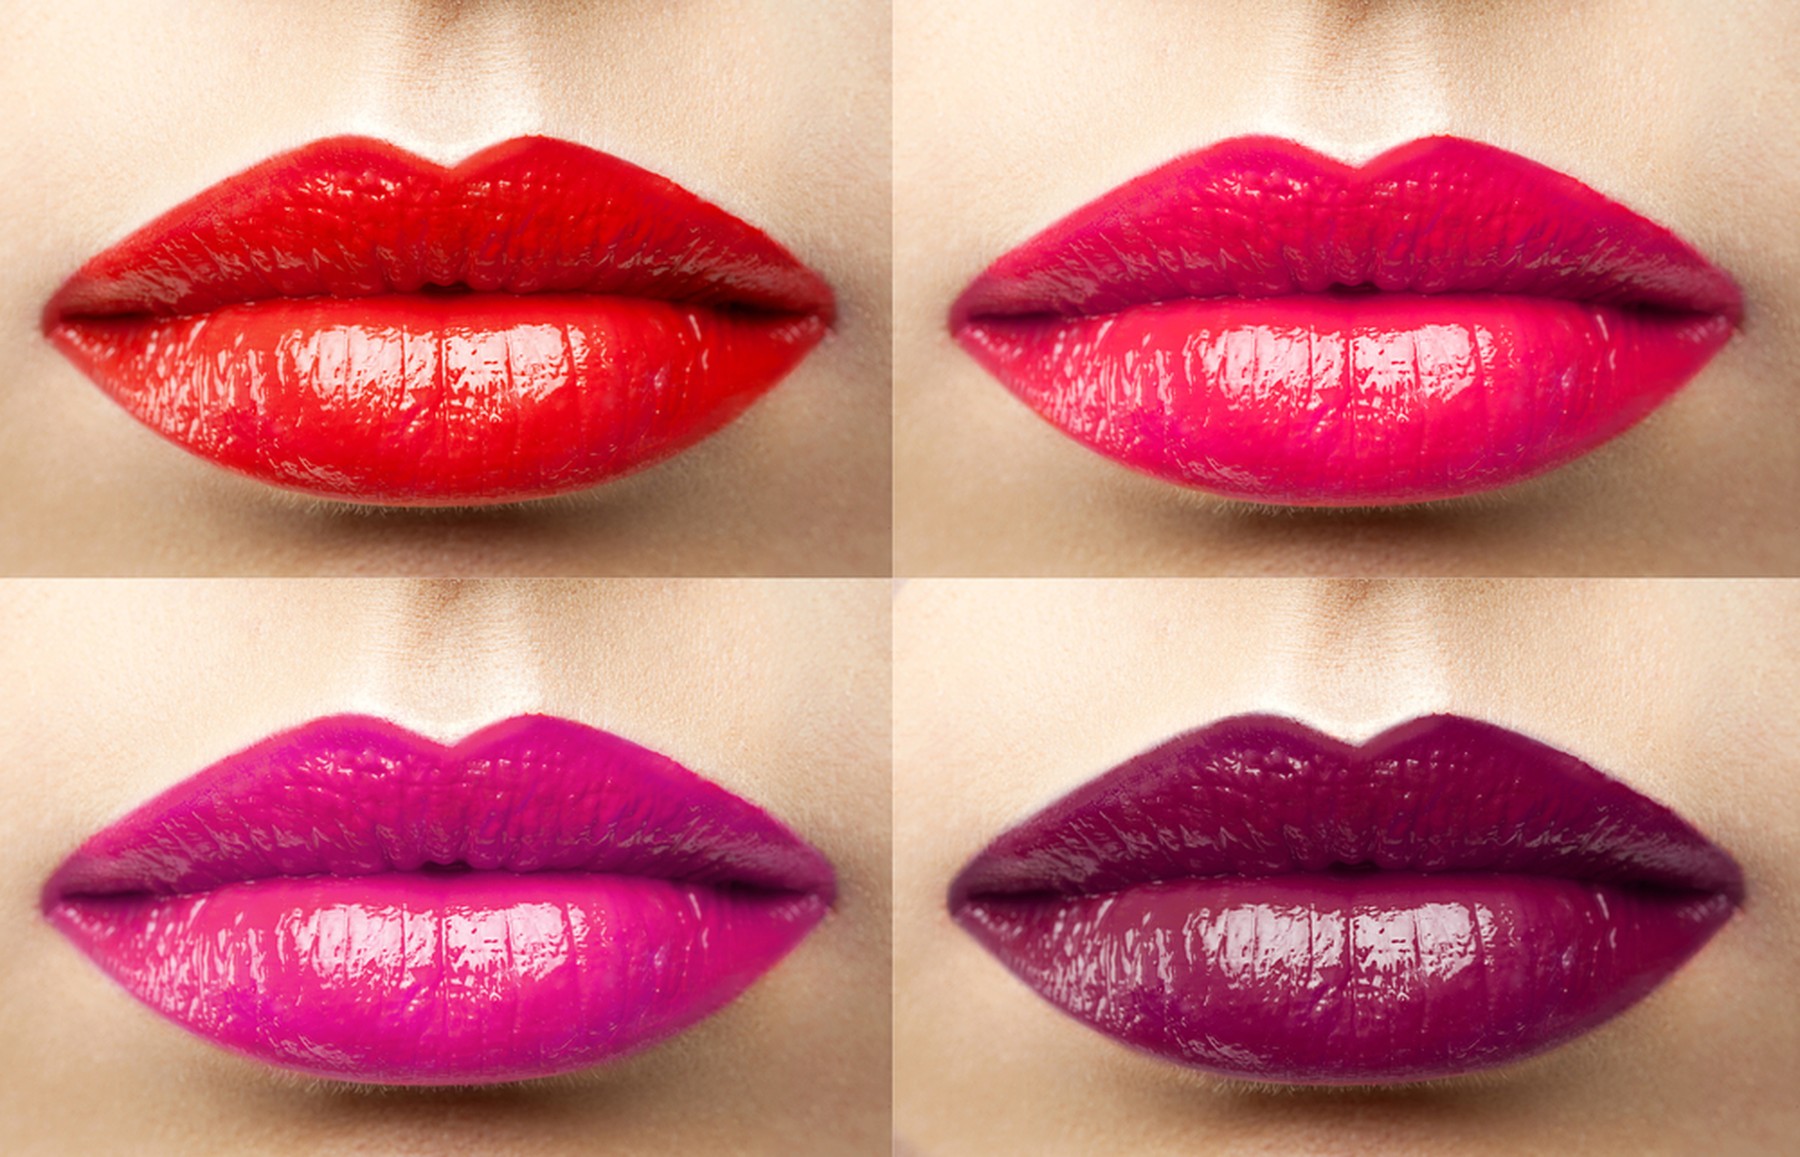 cuatro labios pintados en diferentes colores